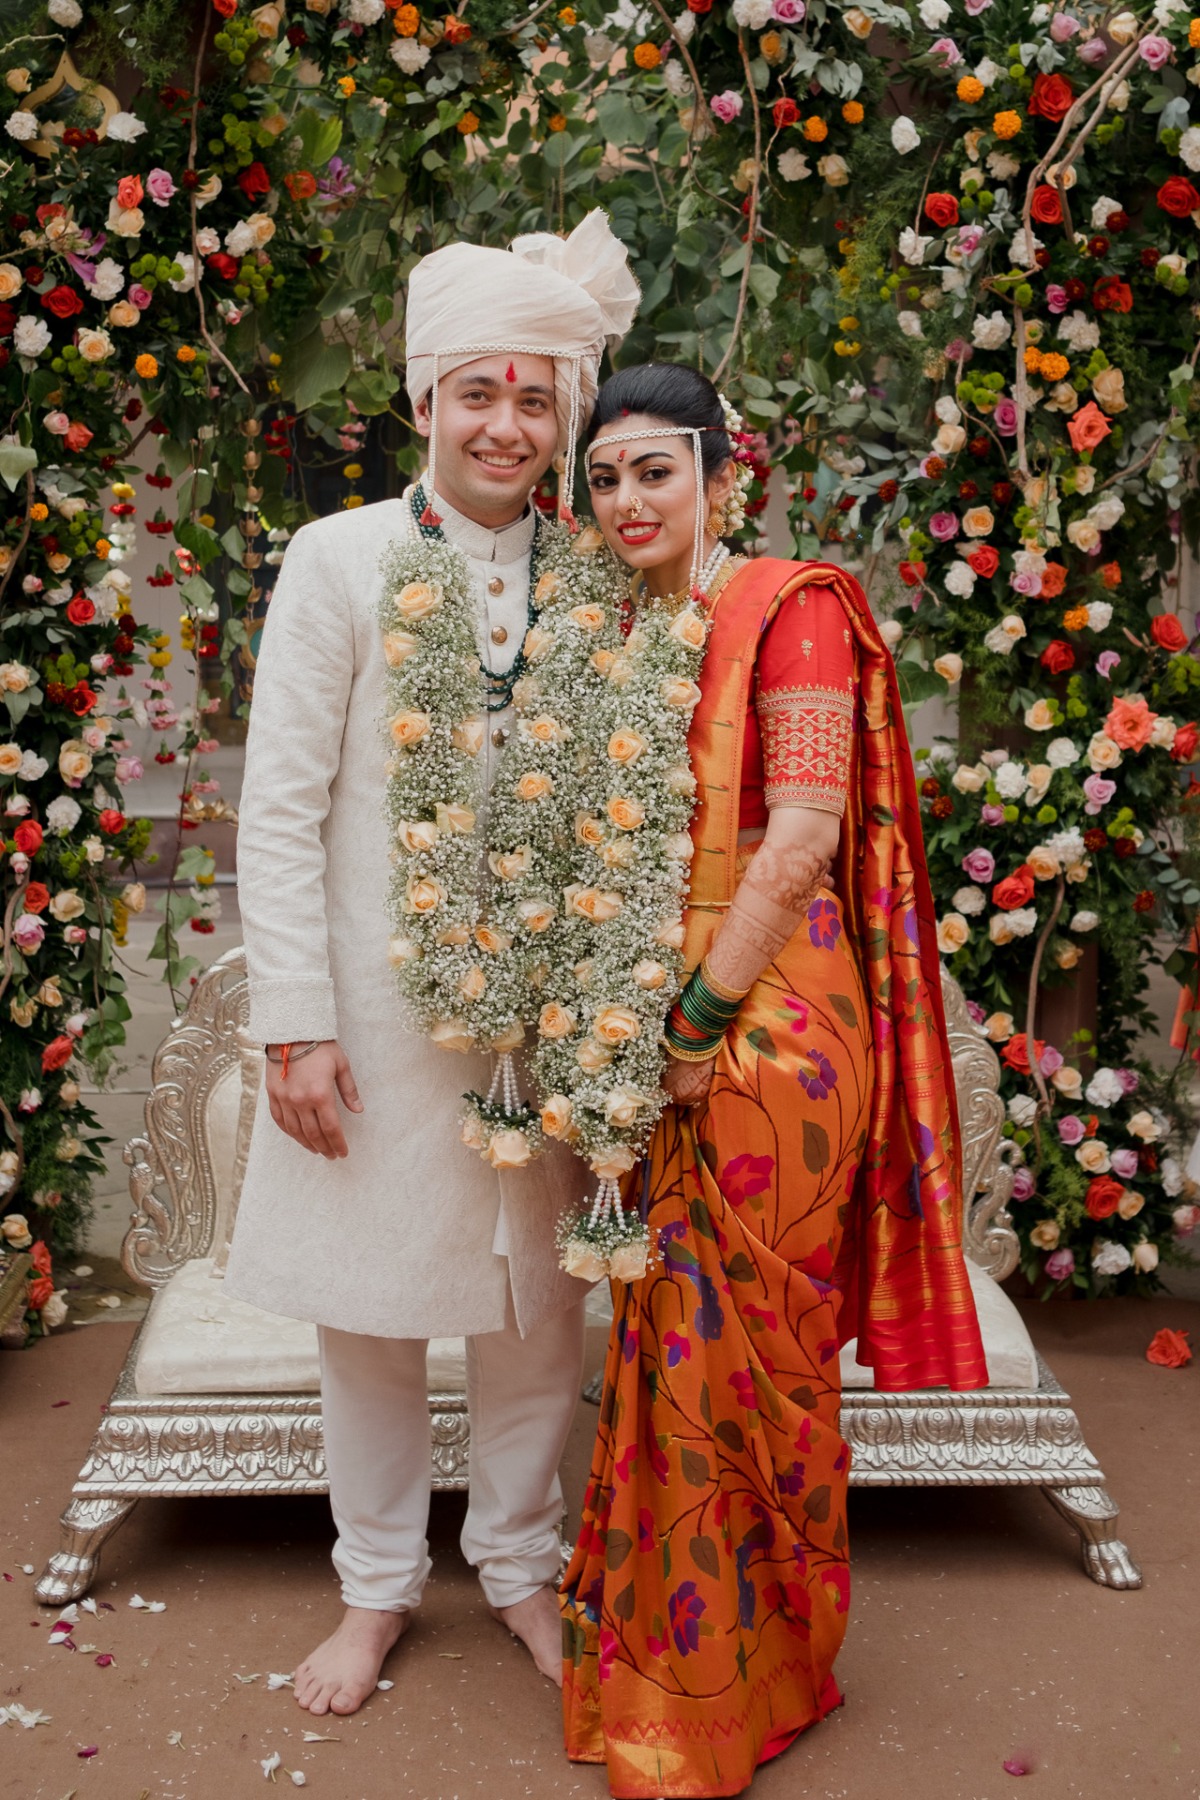 Indian Palace wedding ceremony